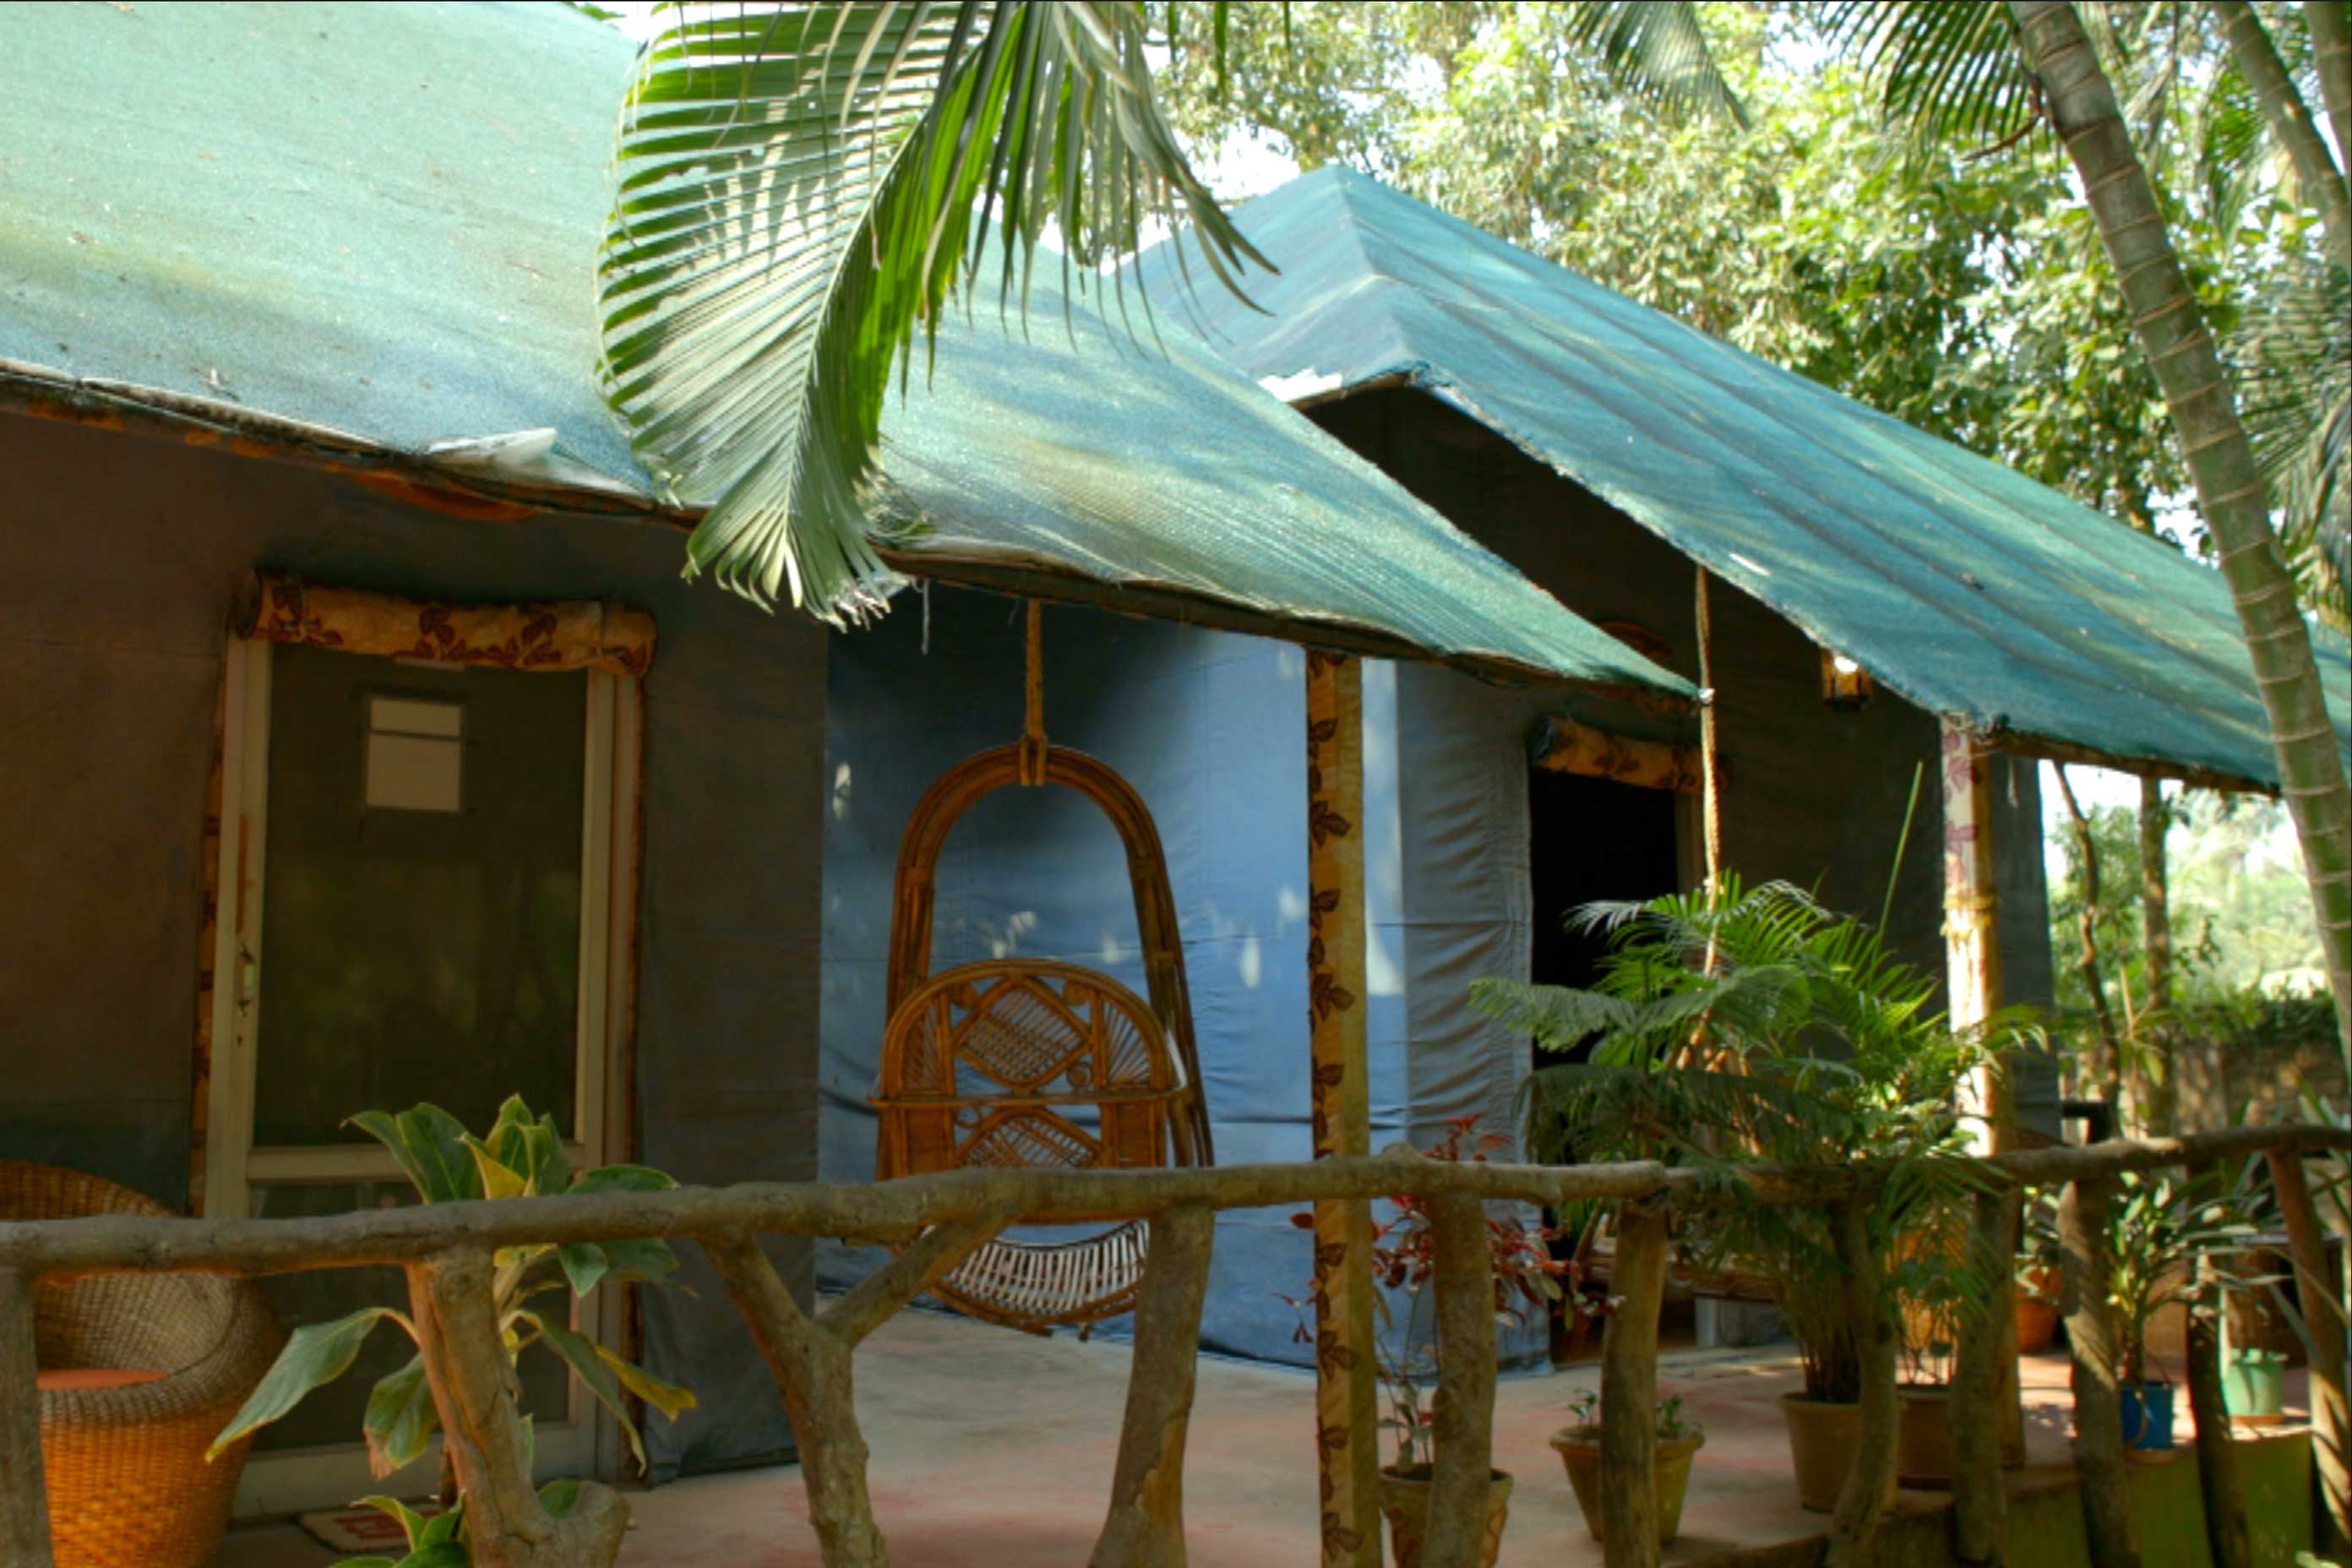 bawali-farmhouse-tent2